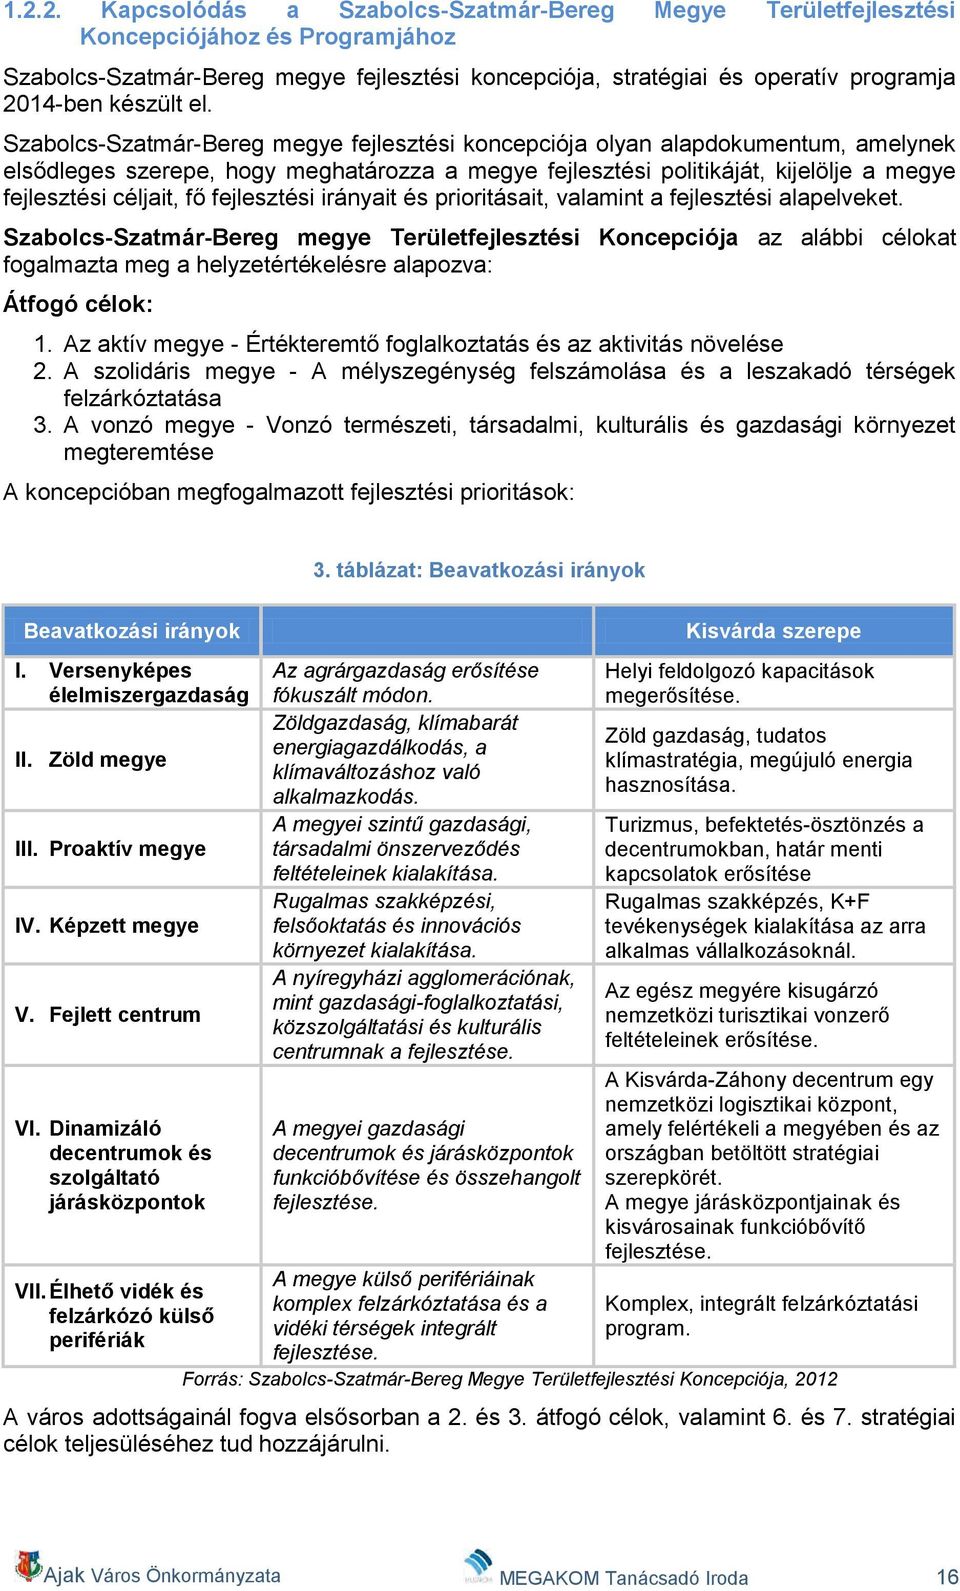 Szabolcs-Szatmár-Bereg megye fejlesztési koncepciója olyan alapdokumentum, amelynek elsődleges szerepe, hogy meghatározza a megye fejlesztési politikáját, kijelölje a megye fejlesztési céljait, fő